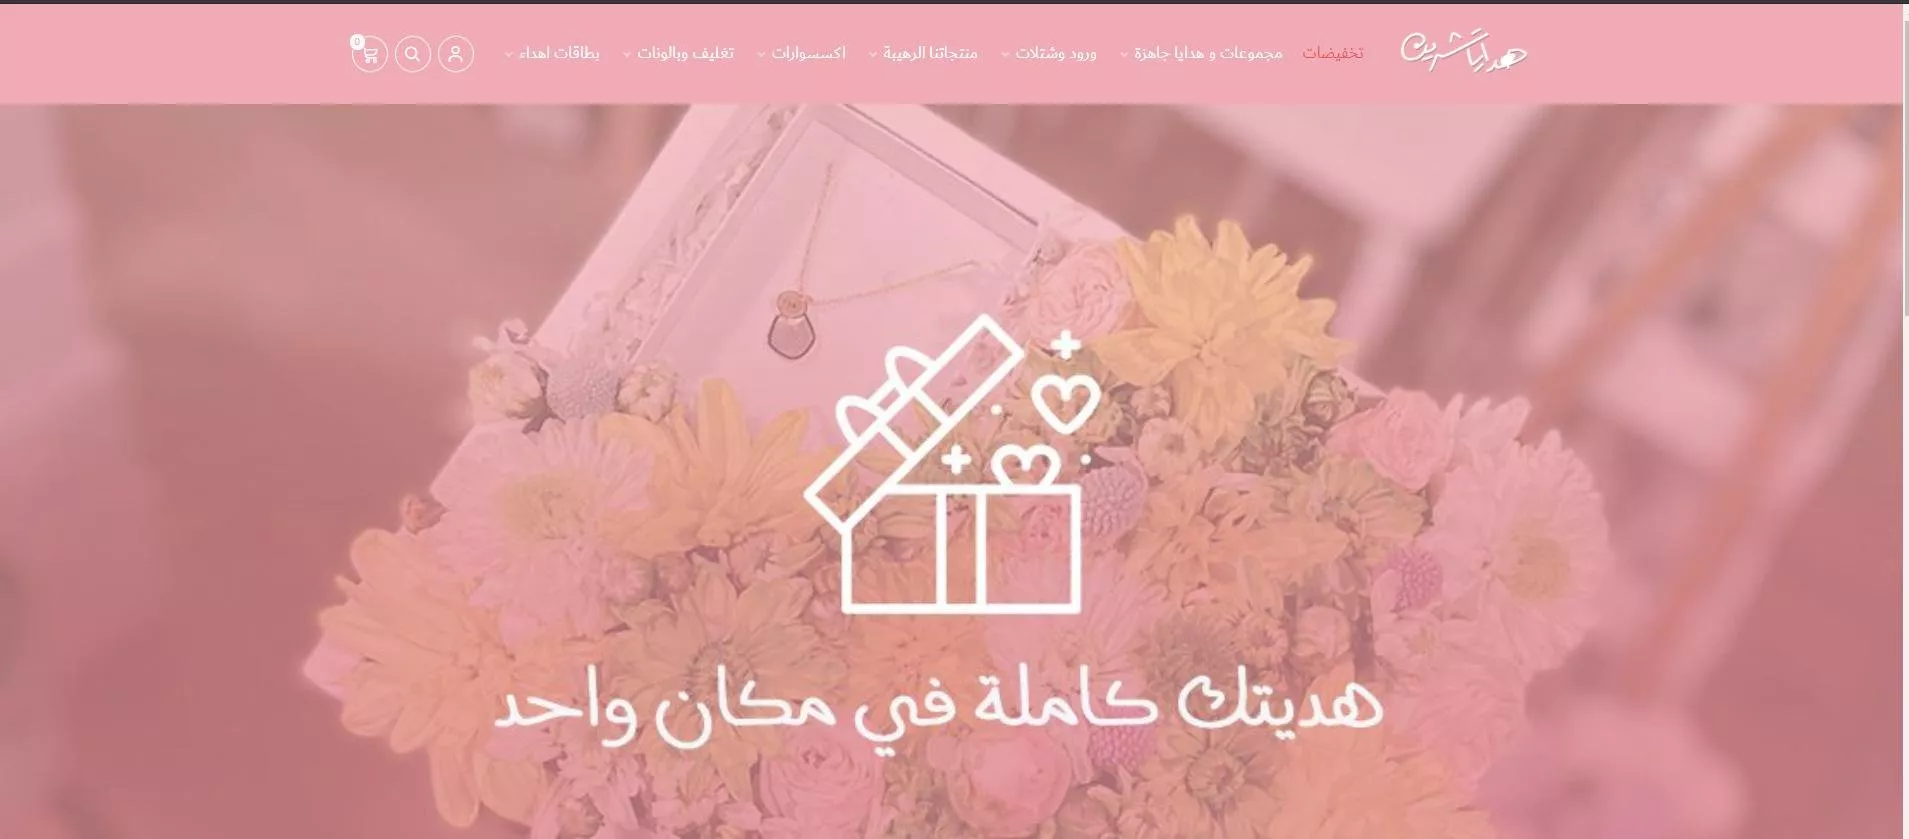 10 مواقع وتطبيقات لشراء هدايا عيد الام، مع خدمة توصيل في السعودية